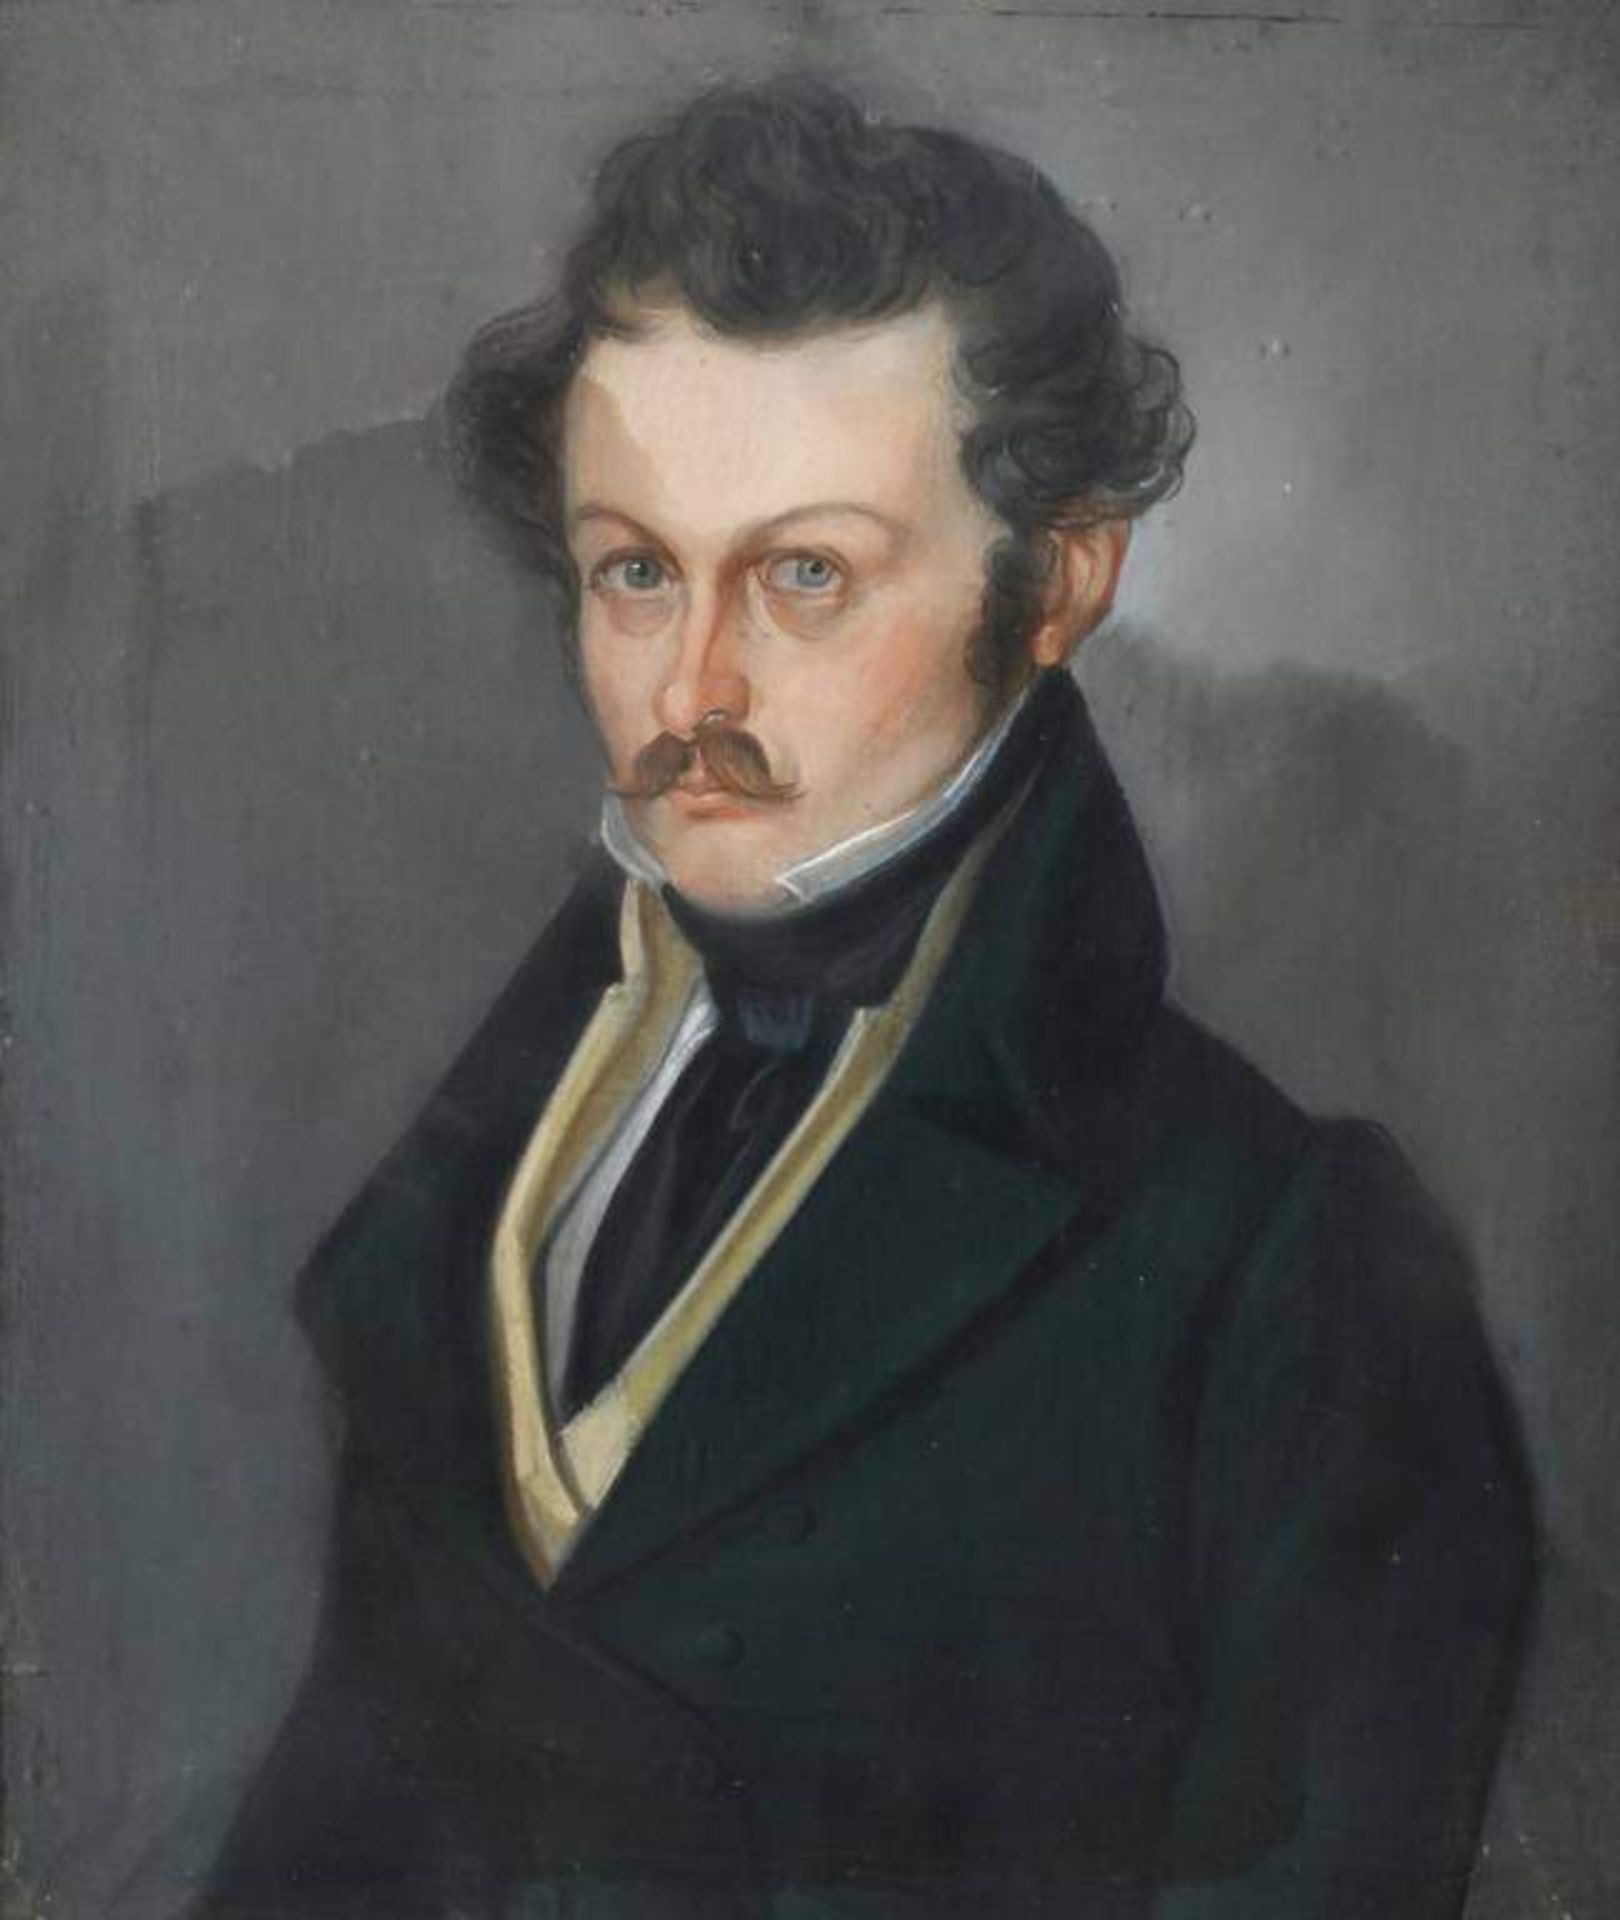 Portrait des Hermann von Grieshammer Halbfigurenbildnis eines würdevollen jungen Mannes im Gehrock